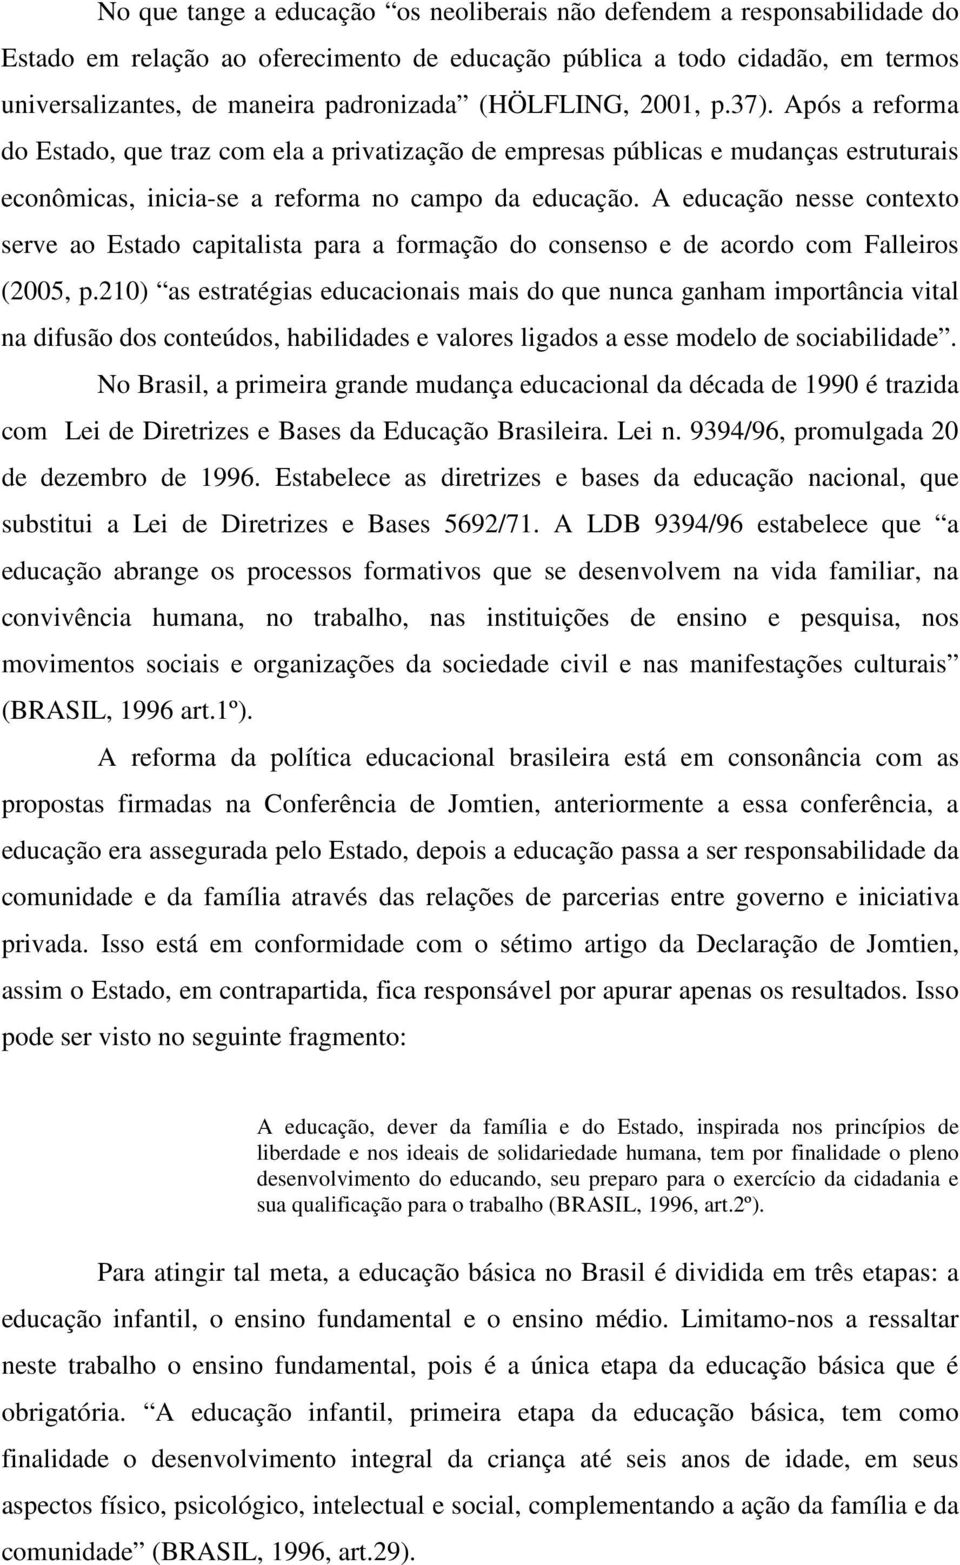 A educação nesse contexto serve ao Estado capitalista para a formação do consenso e de acordo com Falleiros (2005, p.